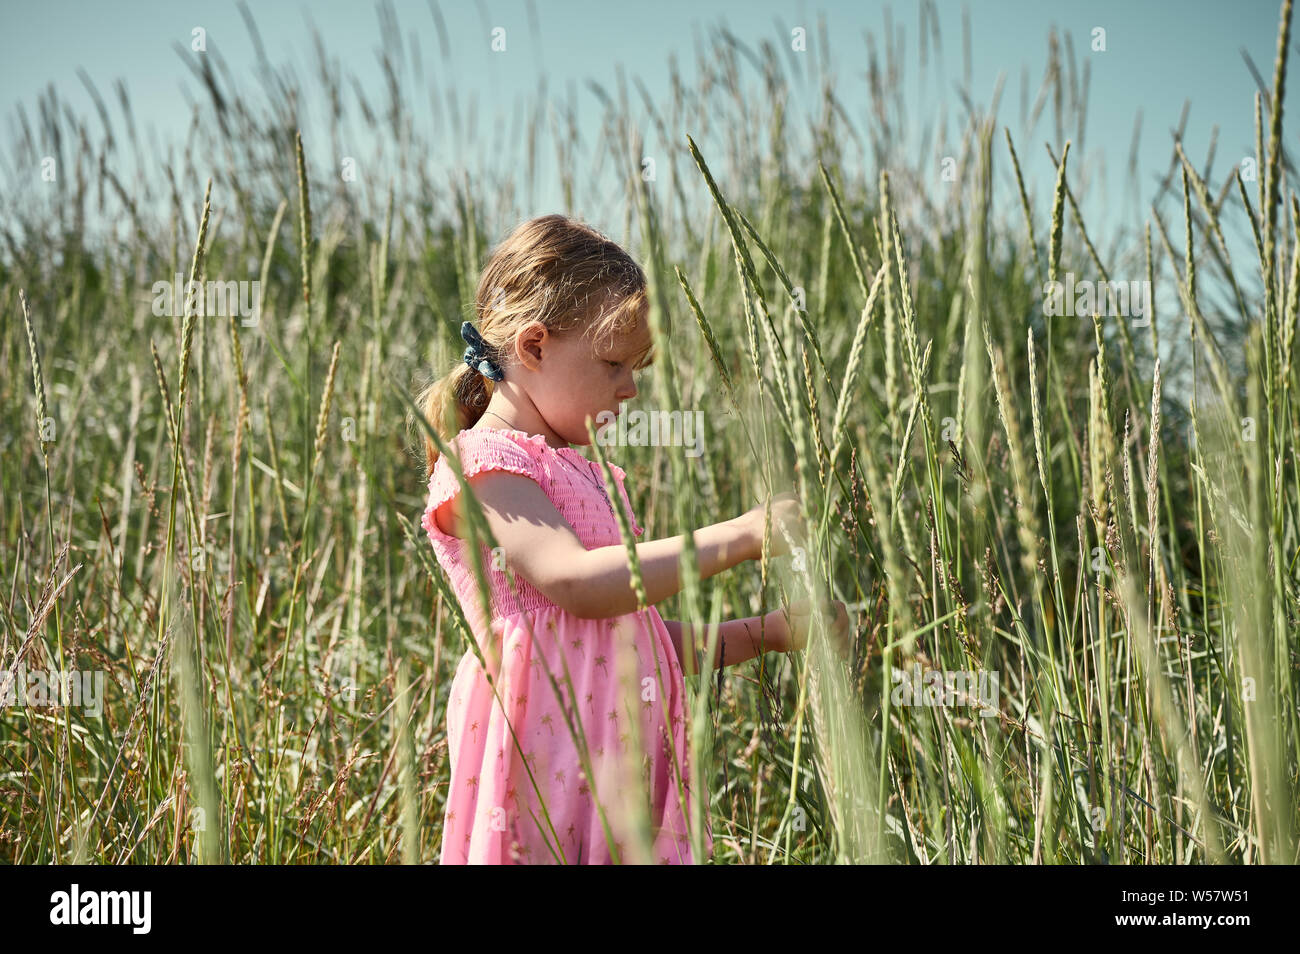 Seitenansicht von adorable konzentriert kleines Mädchen in rosa Kleid stehen im Feld auf Island Grotta Insel und halten Gras blade Stockfoto